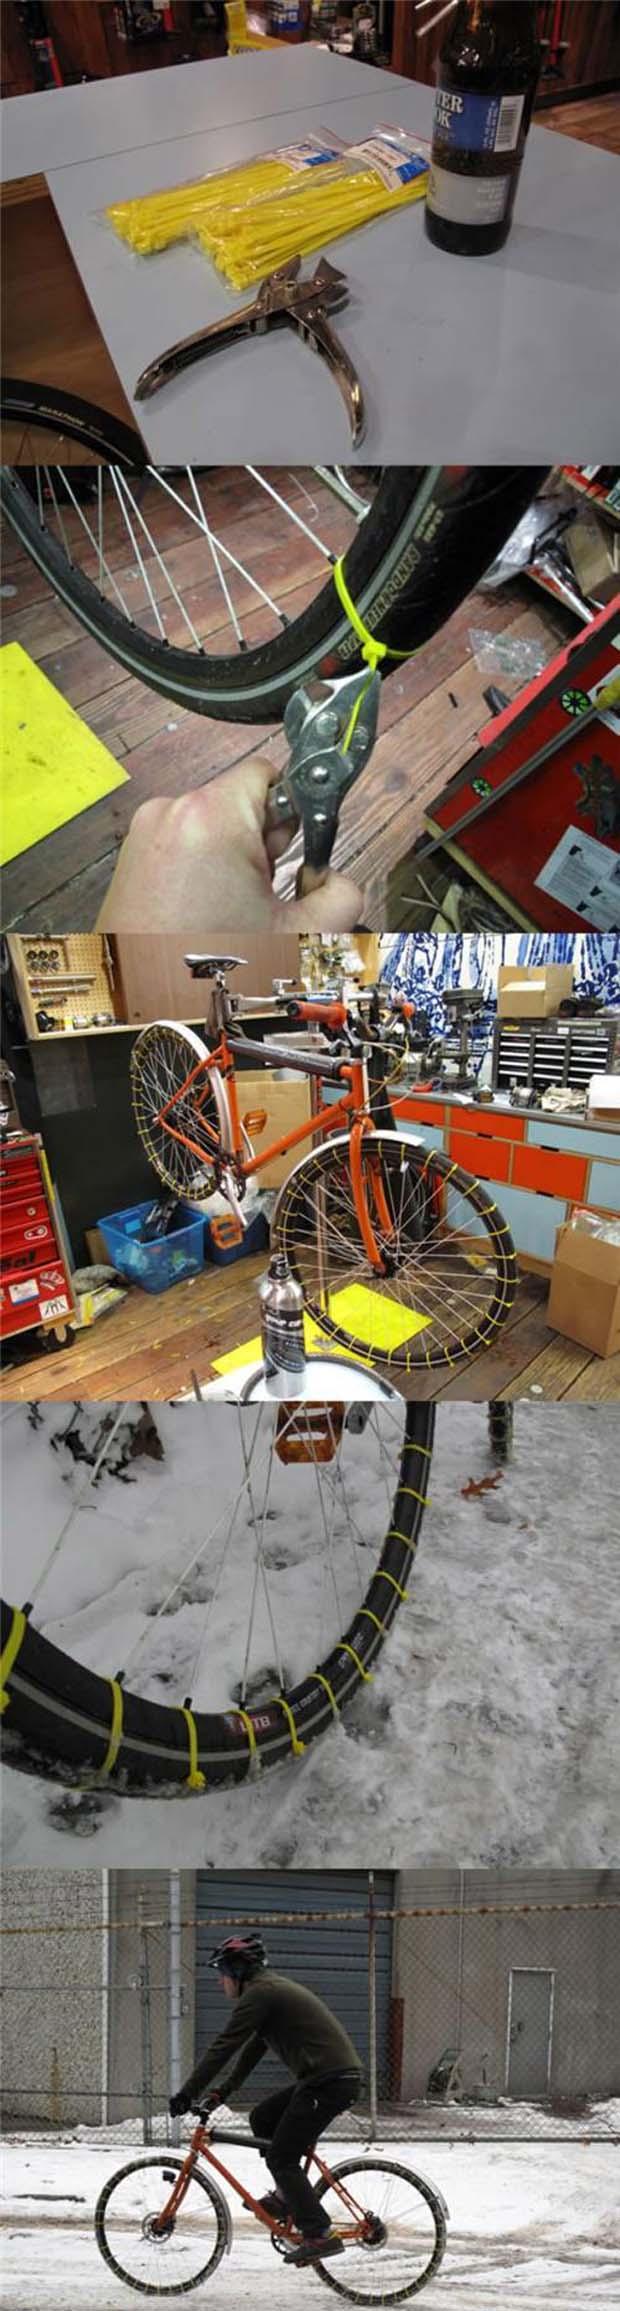 DIY Bicycle Snow Tires